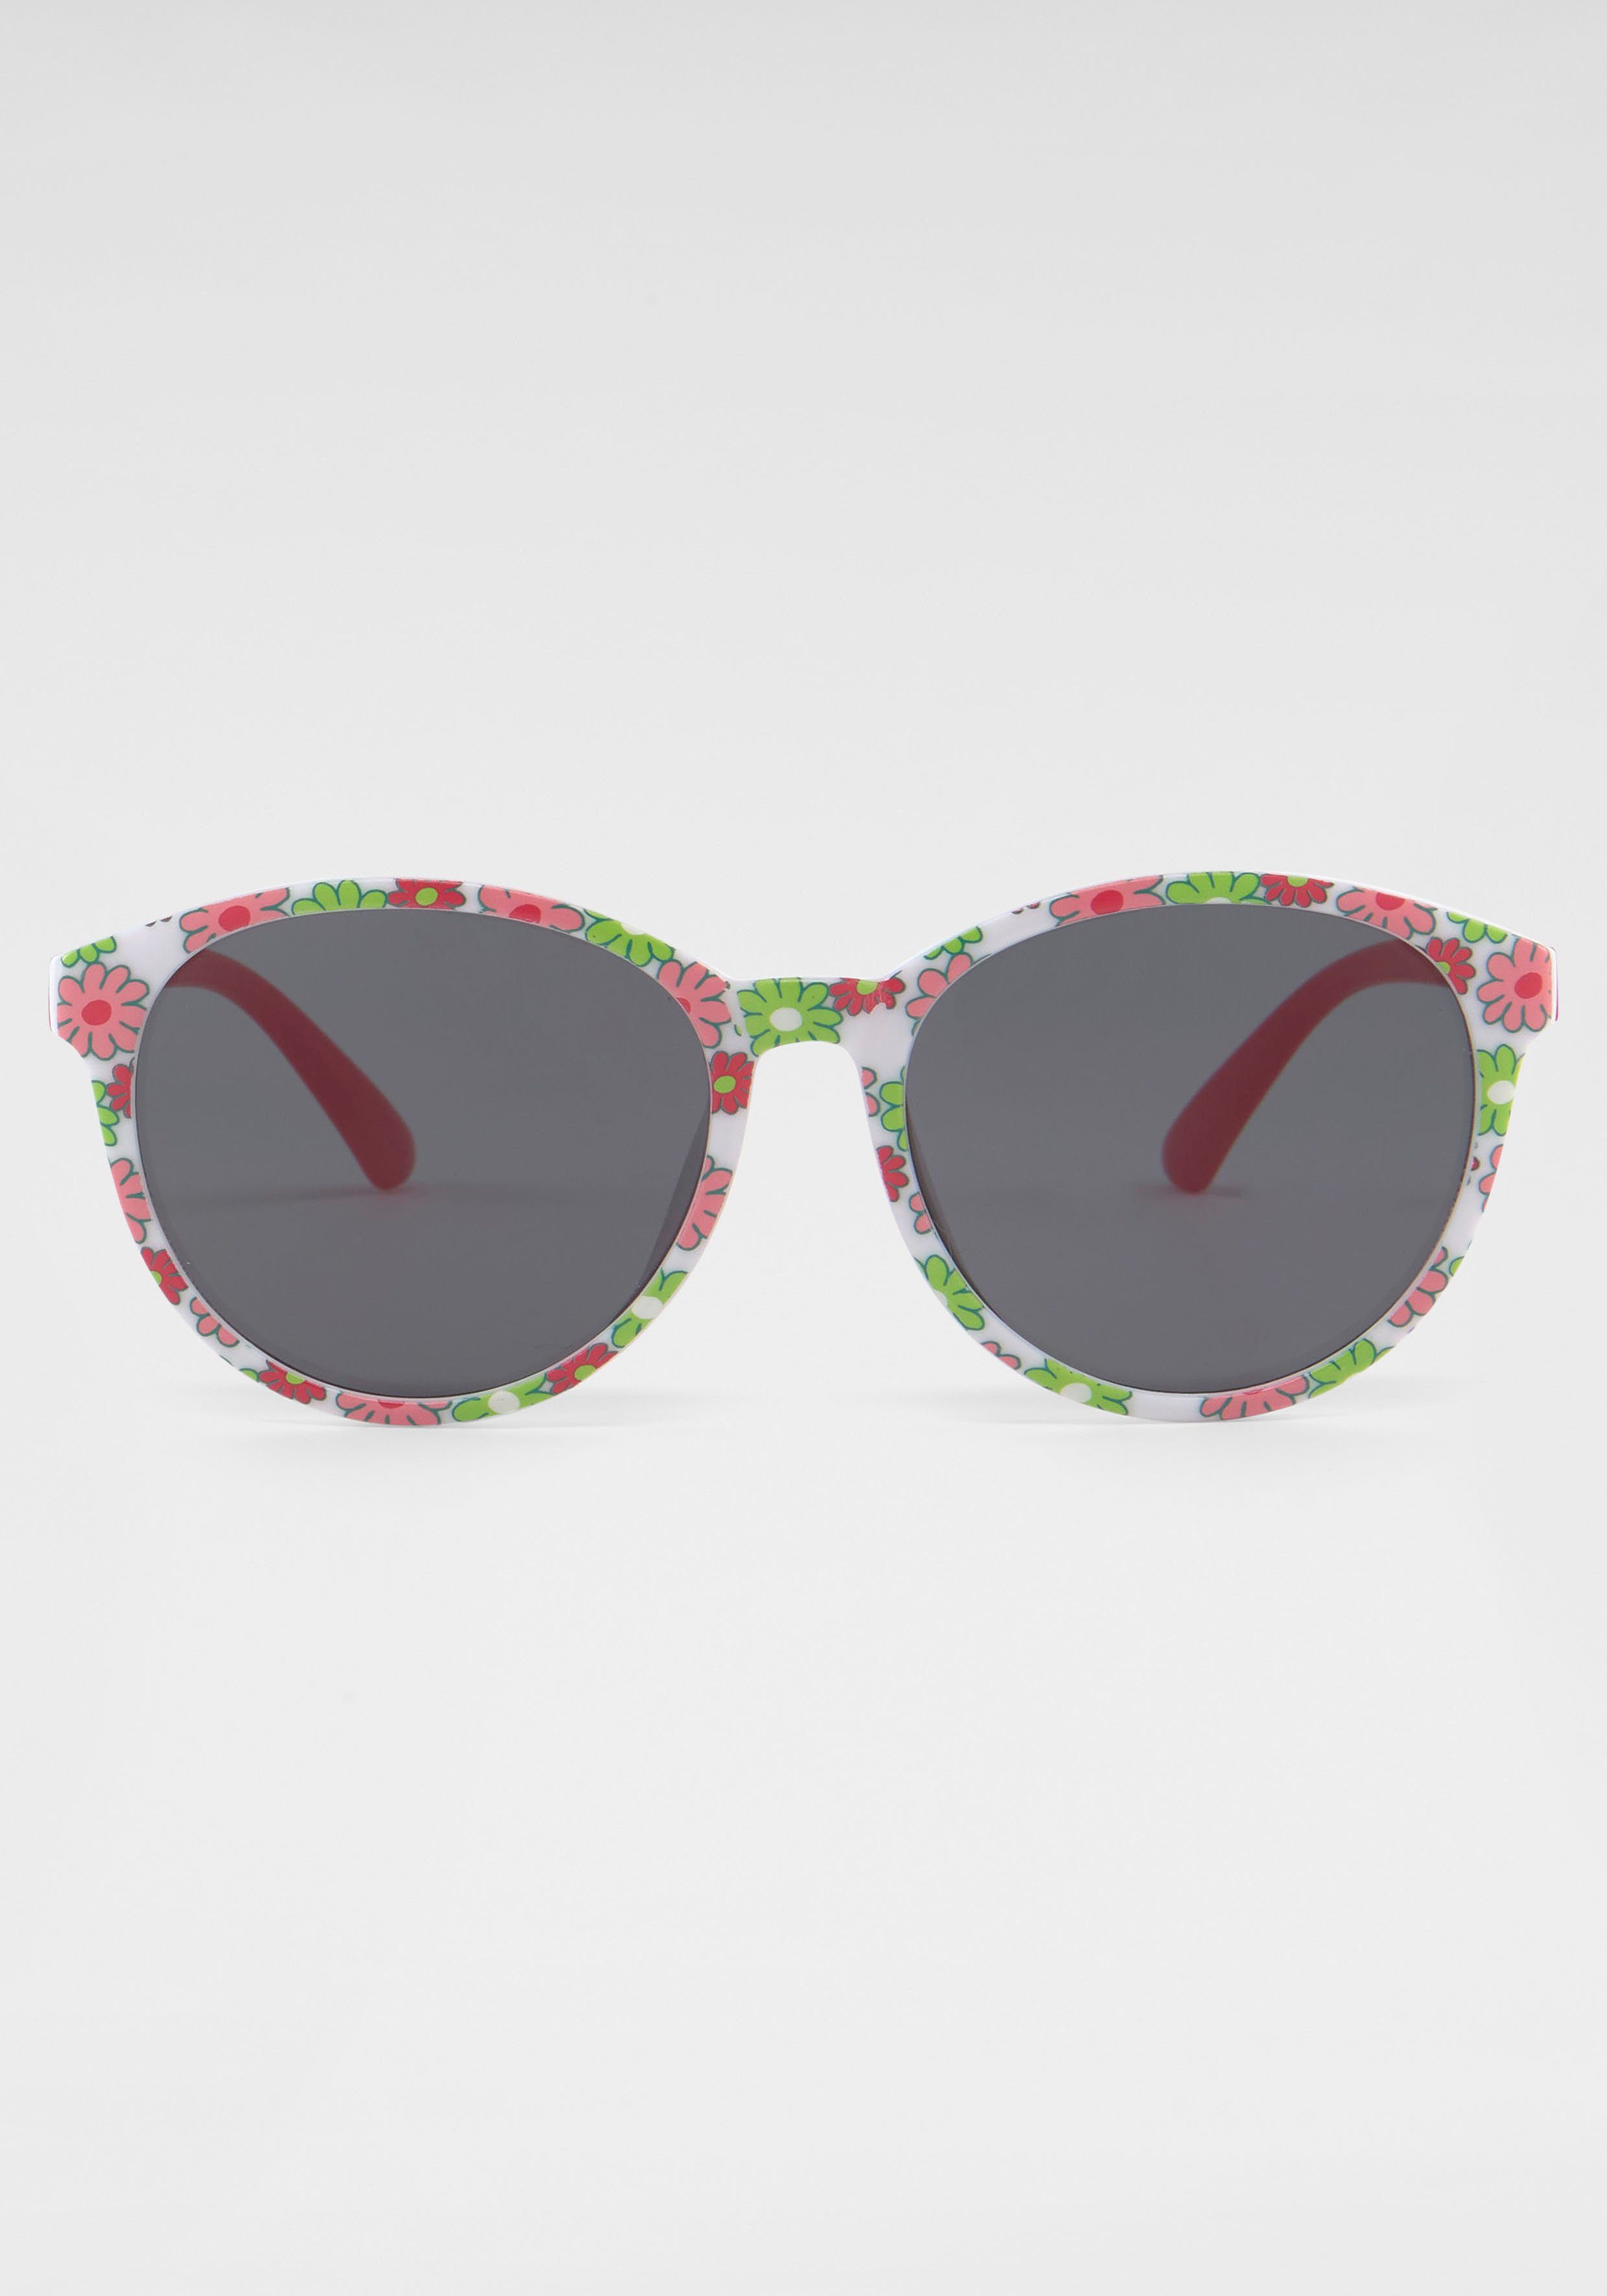 Sonnenbrille, PRIMETTA Eyewear mit Blümchen-Muster Fassung